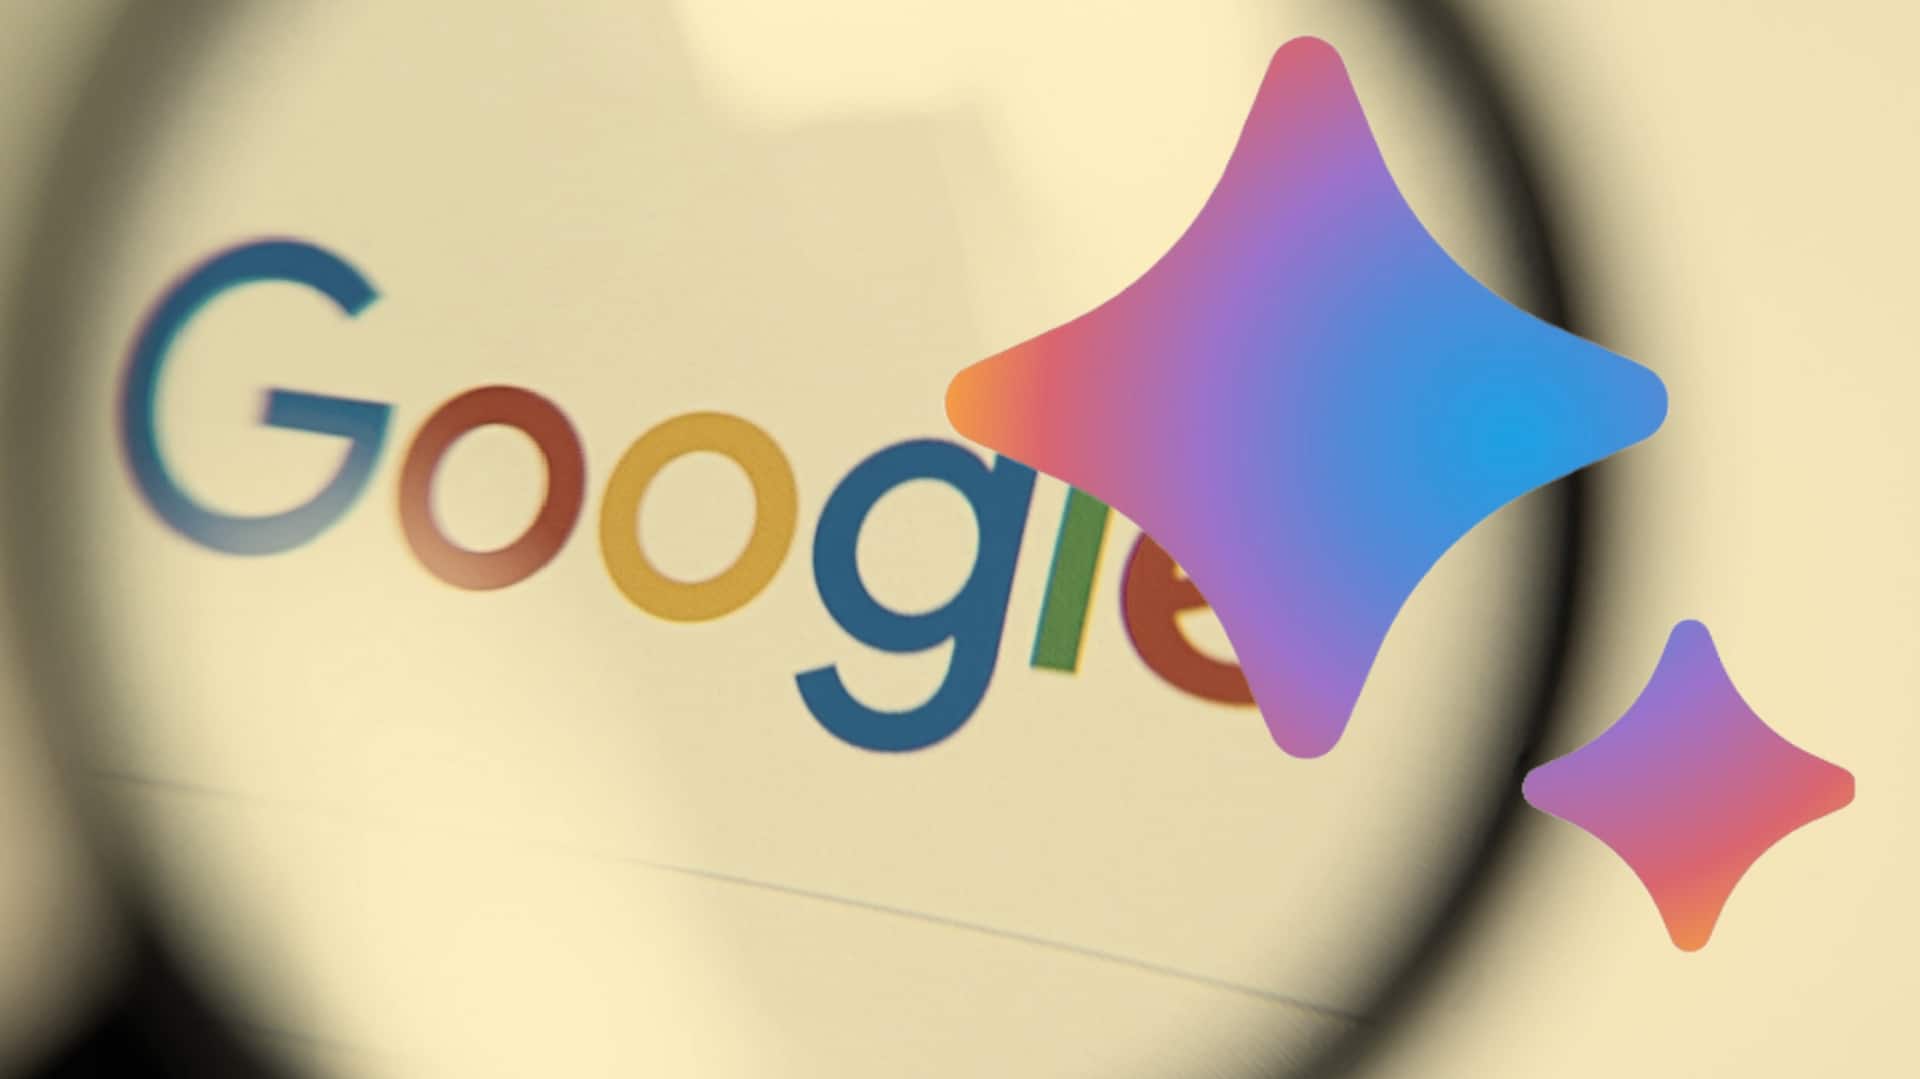 गूगल बार्ड के नए फीचर्स के लिए कंपनी ने लोगों से मांगे सुझाव